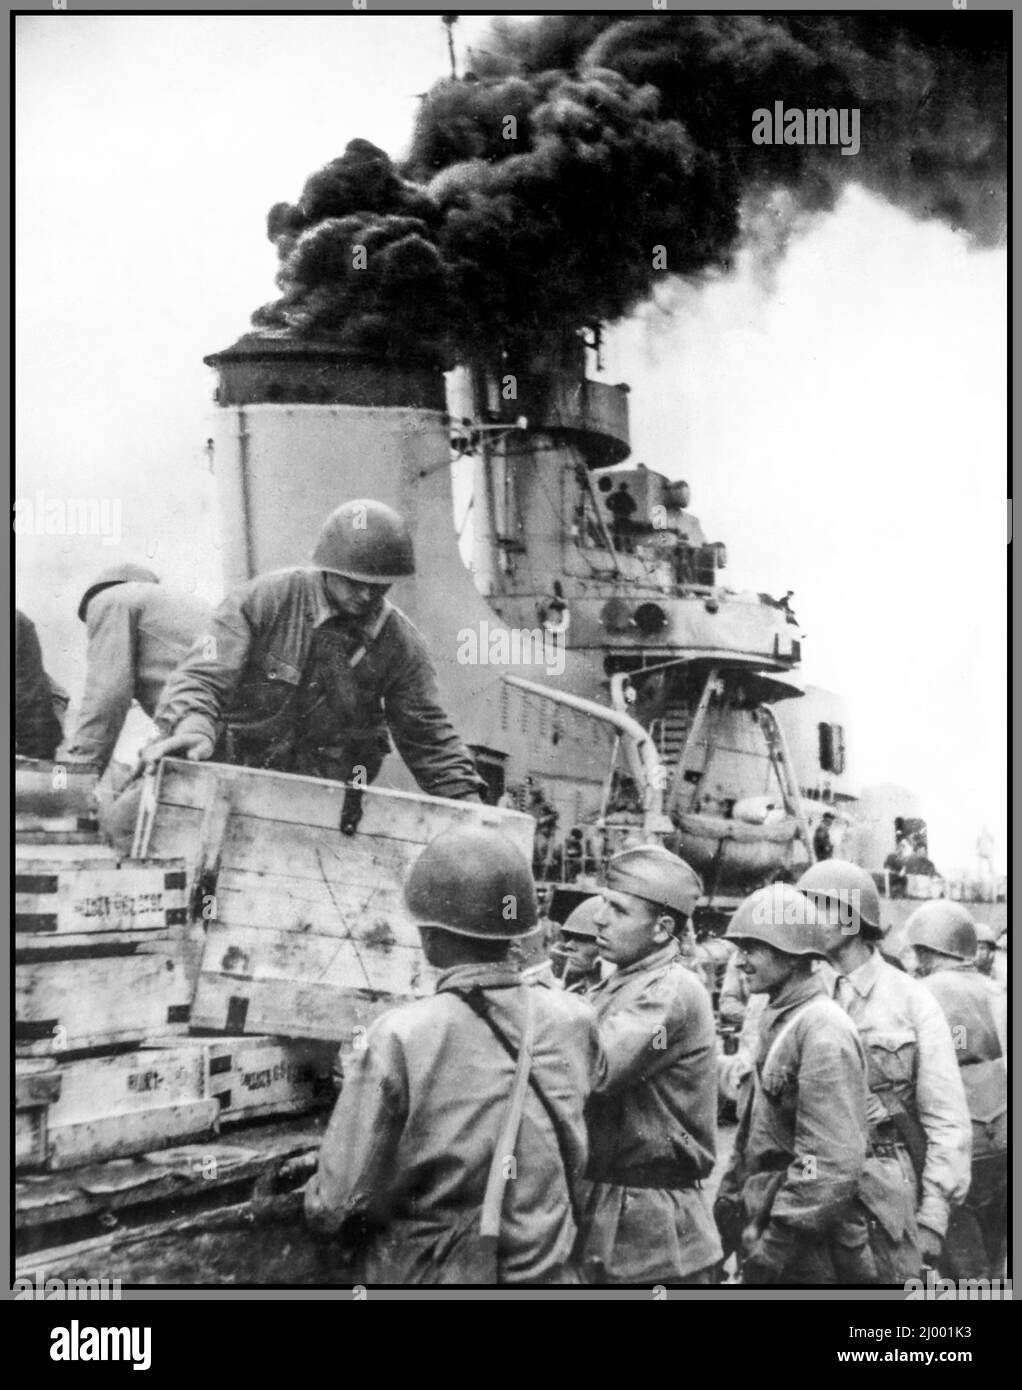 UdSSR-Sowjet WW2 Verladung von Verstärkungen und Munitionsmaterialien an Bord des Führers der russischen Zerstörer „Taschkent“, um dem belagerten Sewastopol zu helfen. Ort: Batumi, Georgien, UdSSR 1942 Stockfoto